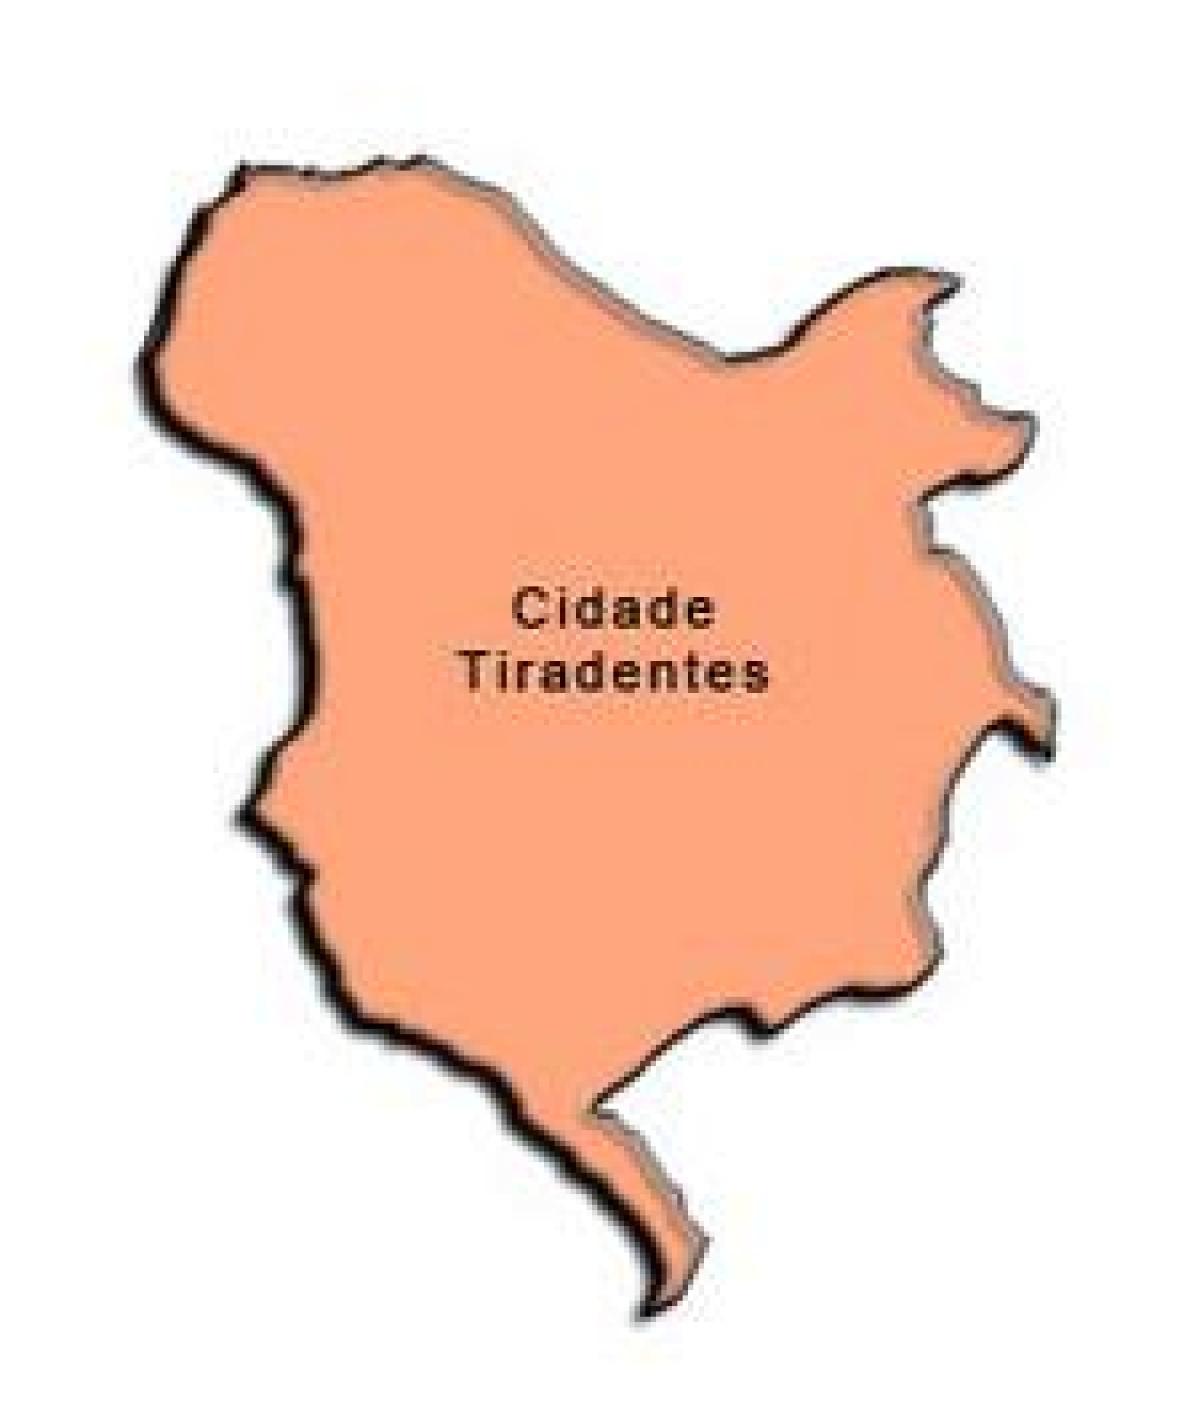 Peta dari Tiradentes sub-prefektur